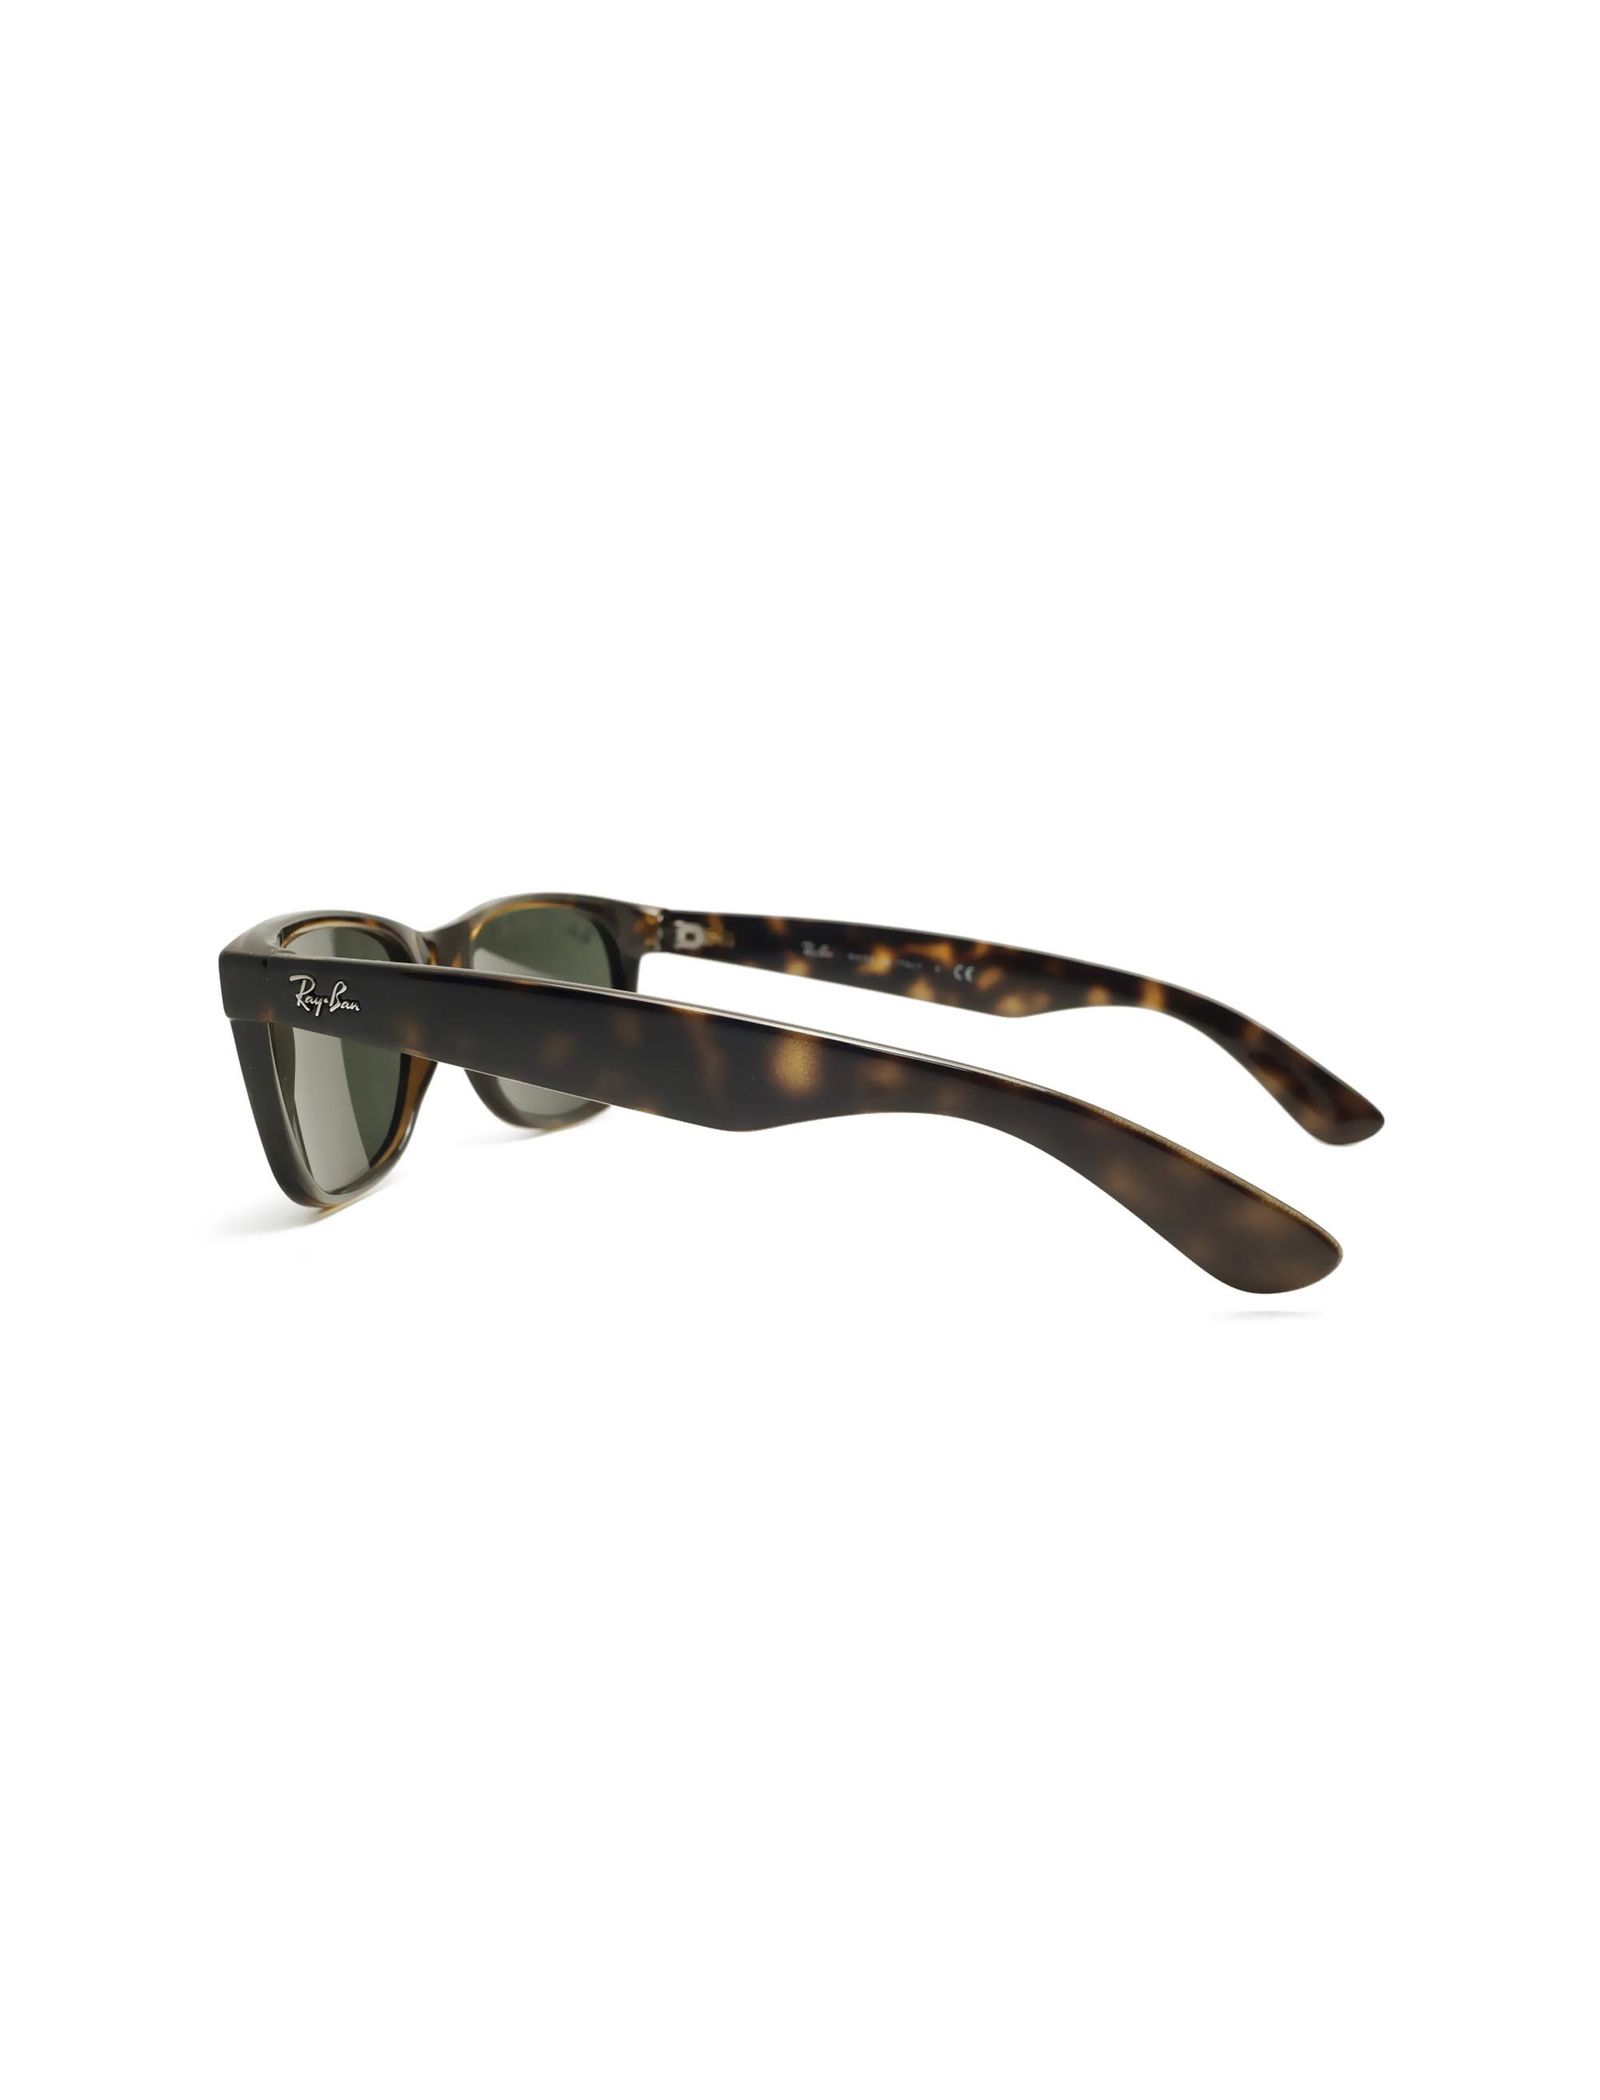 عینک آفتابی ری بن مدل 2132-902L-55 - قهوه ای - 4